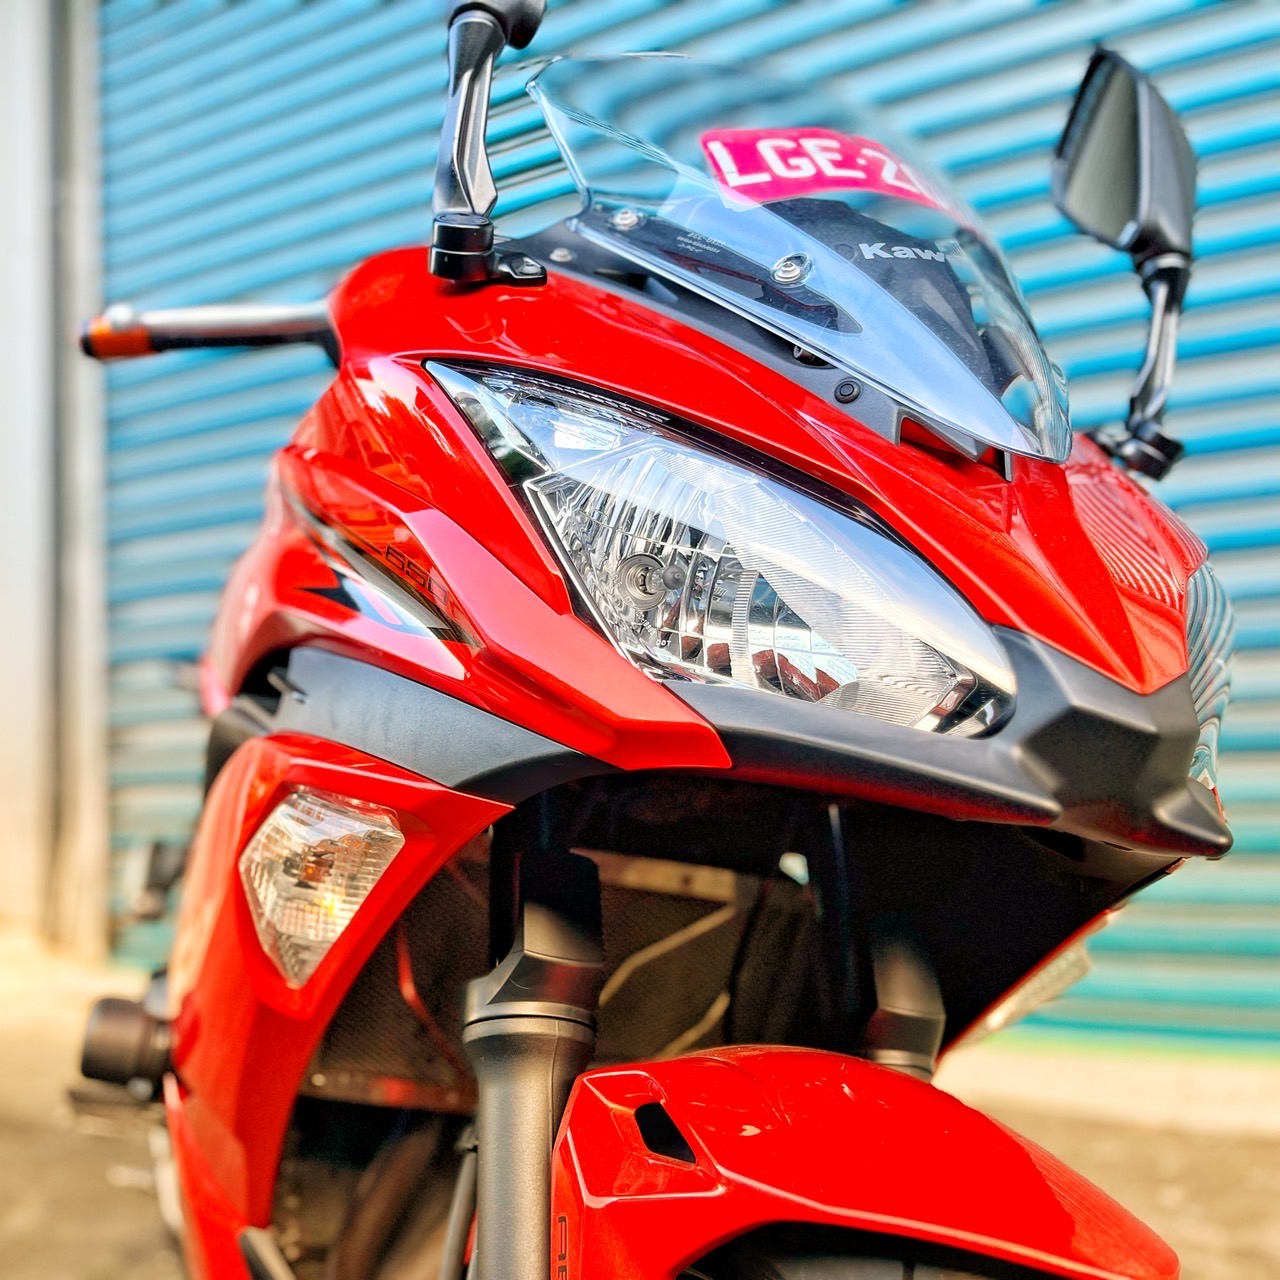 【小資族二手重機買賣】KAWASAKI NINJA650 - 「Webike-摩托車市」 里程保證 無摔無事故 小資族二手重機買賣